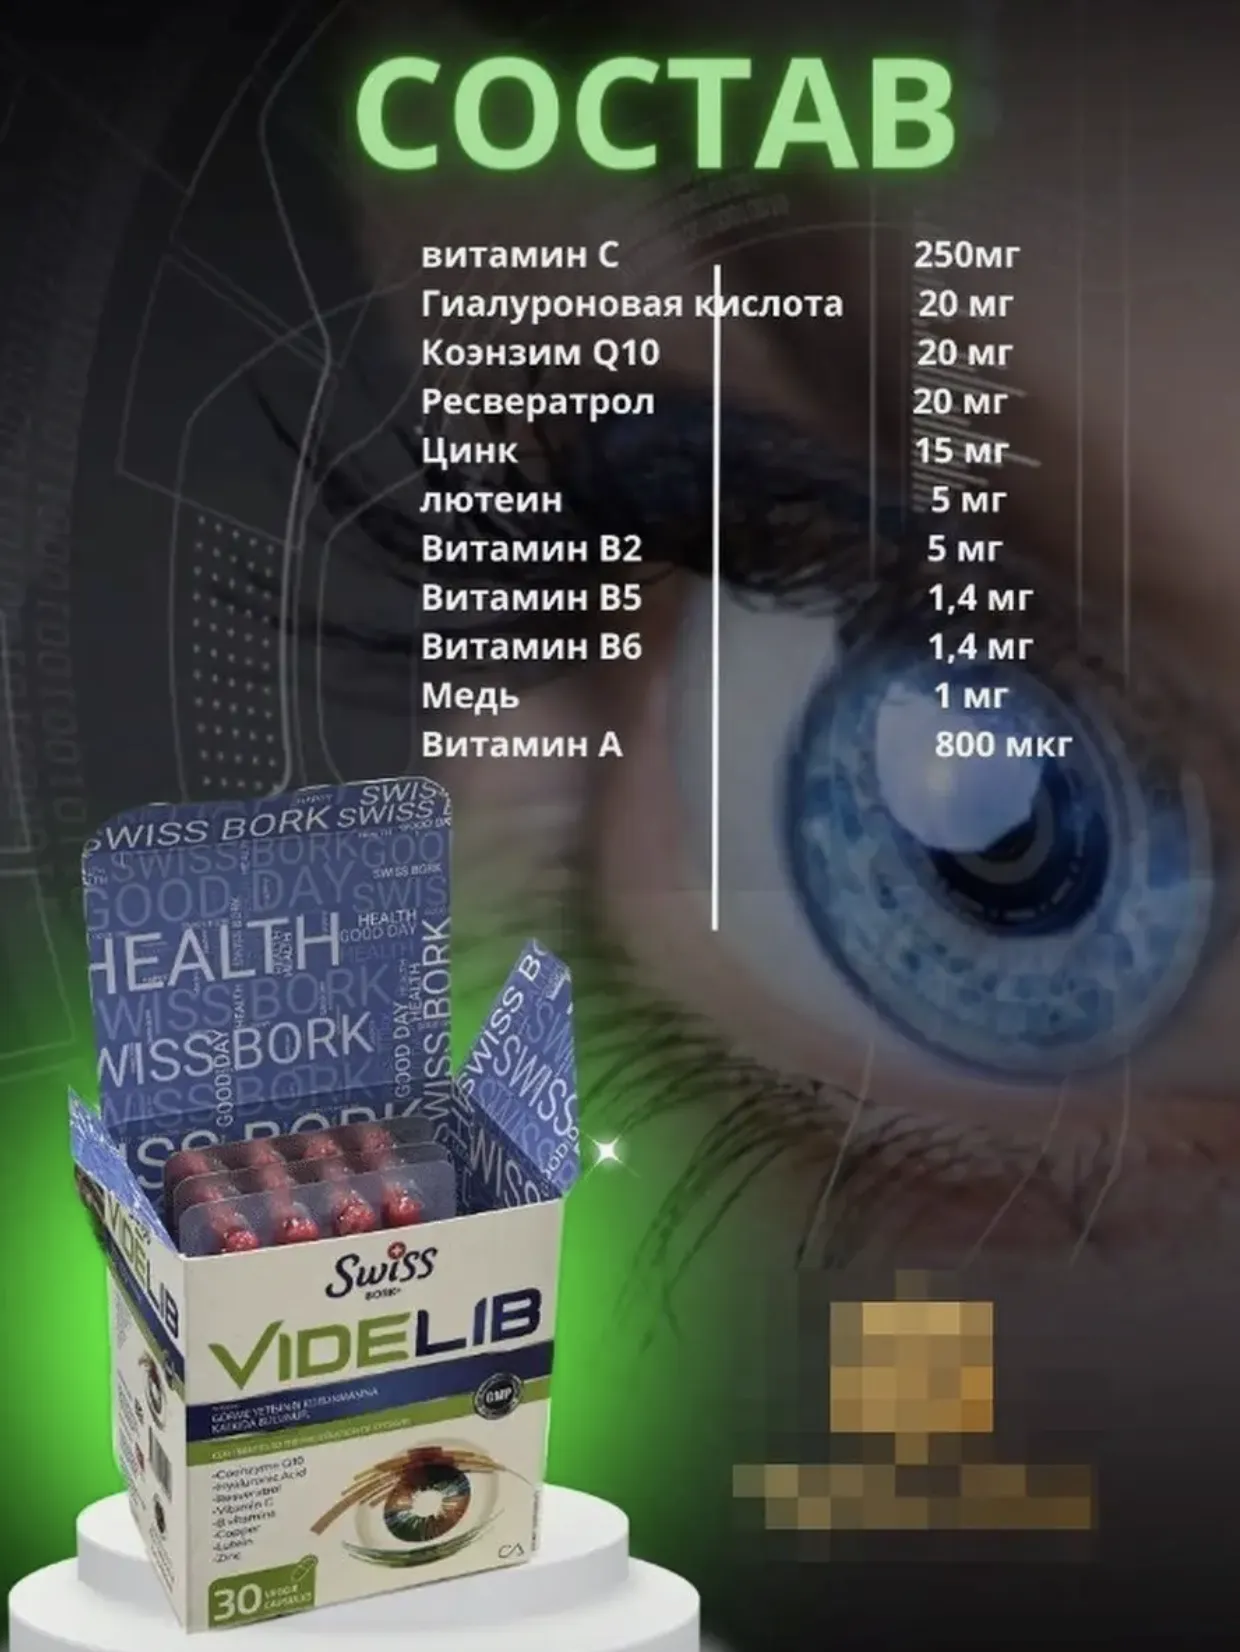 Комплекс витаминов для здоровья глаз и сохранения зрения Swiss bork Videlib#5